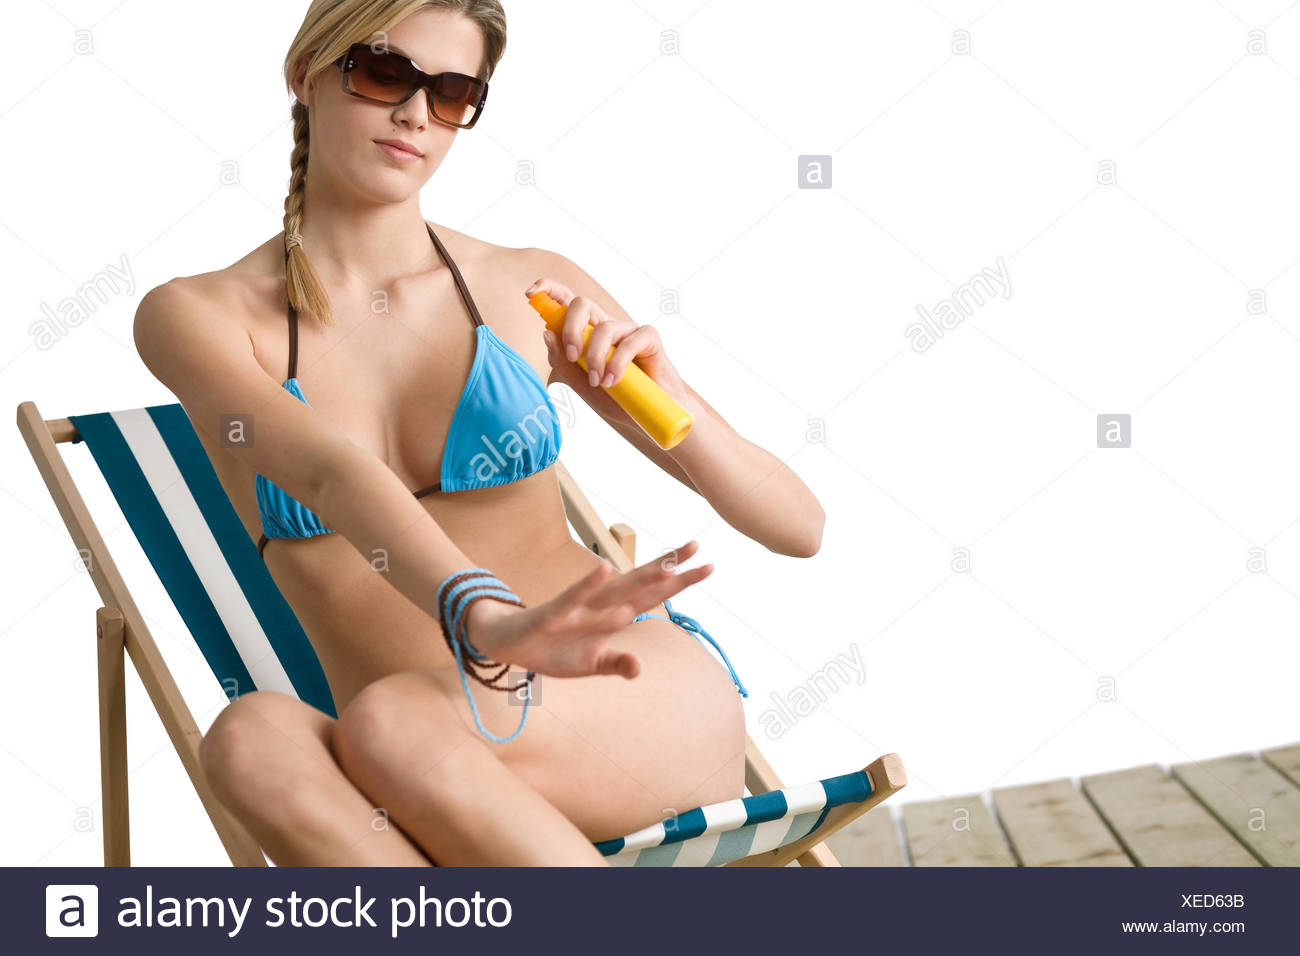 Beach - Young woman in bikini apply suntan lotion Stock Photo - Alamy